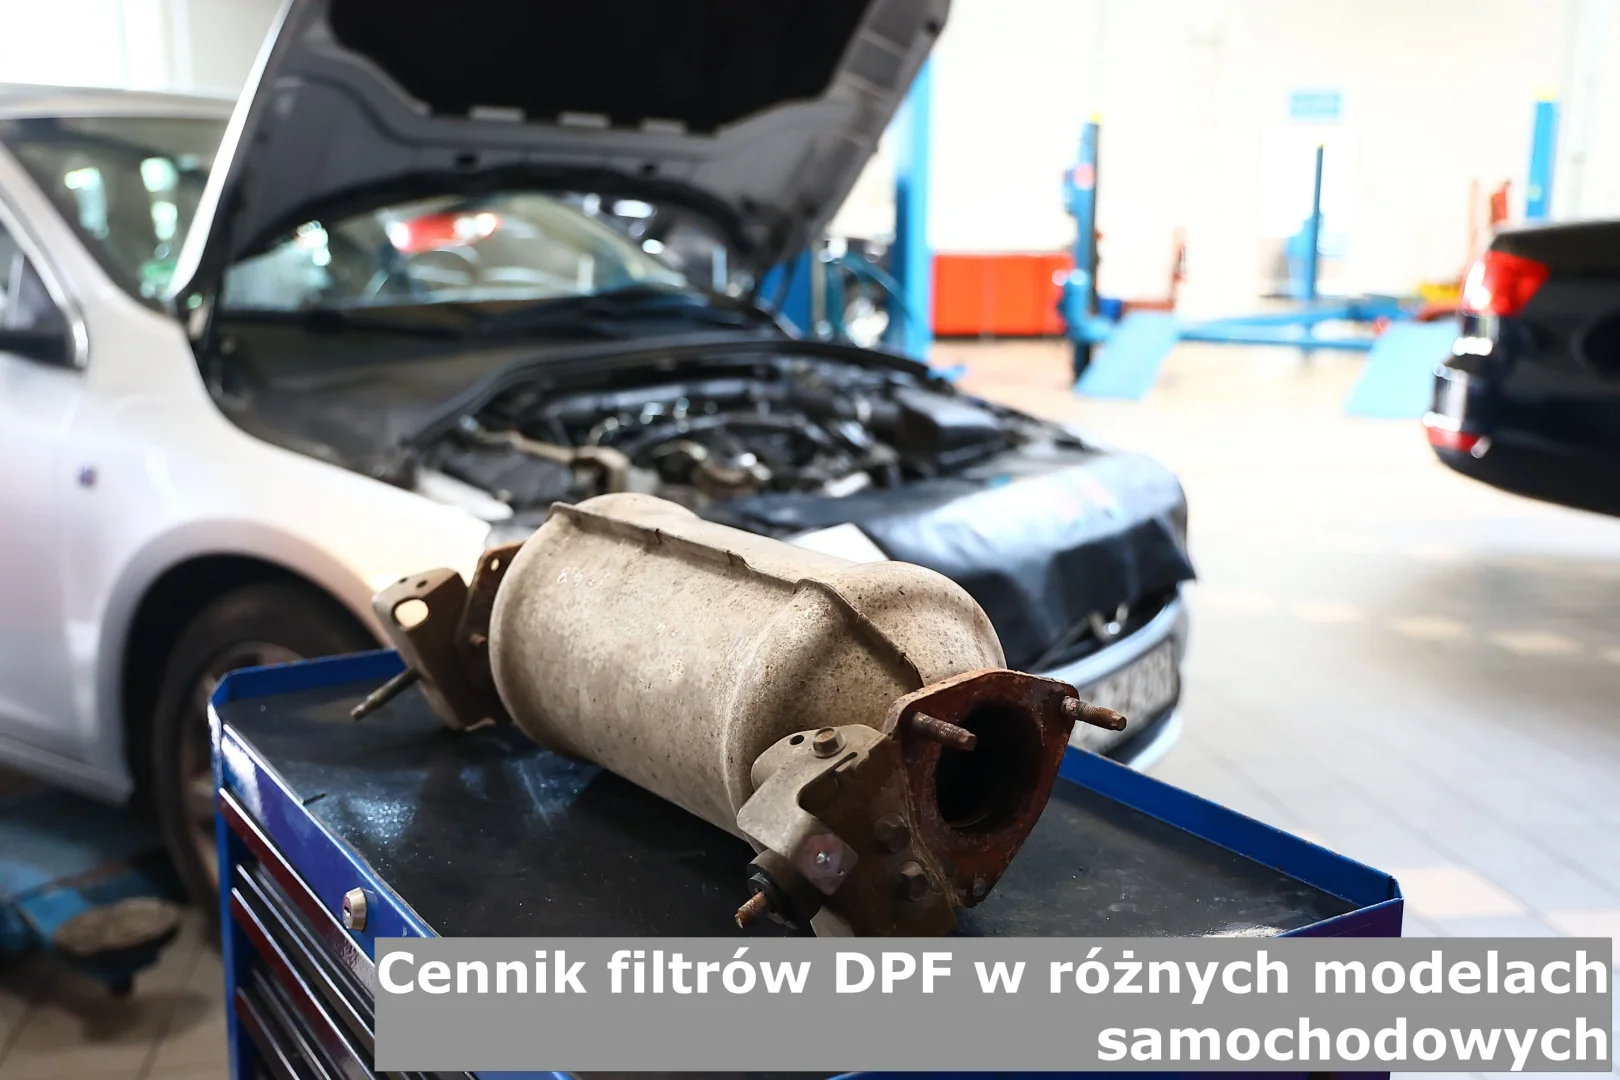 Cennik filtrów DPF w różnych modelach samochodowych